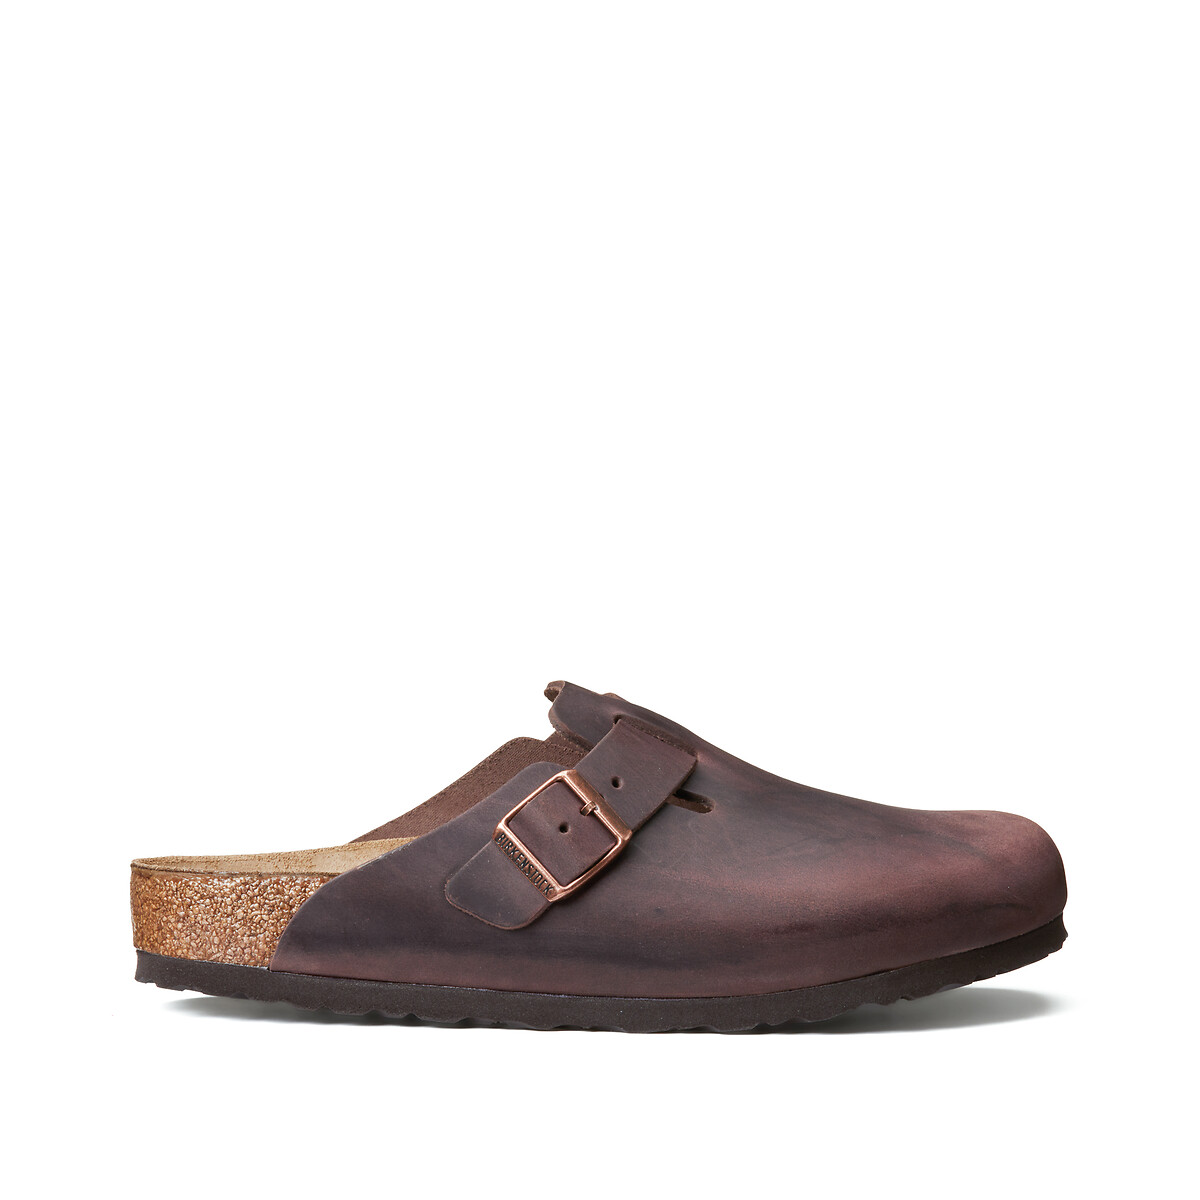 Sandalia birkenstock arizona La mejor selección de zapatos online